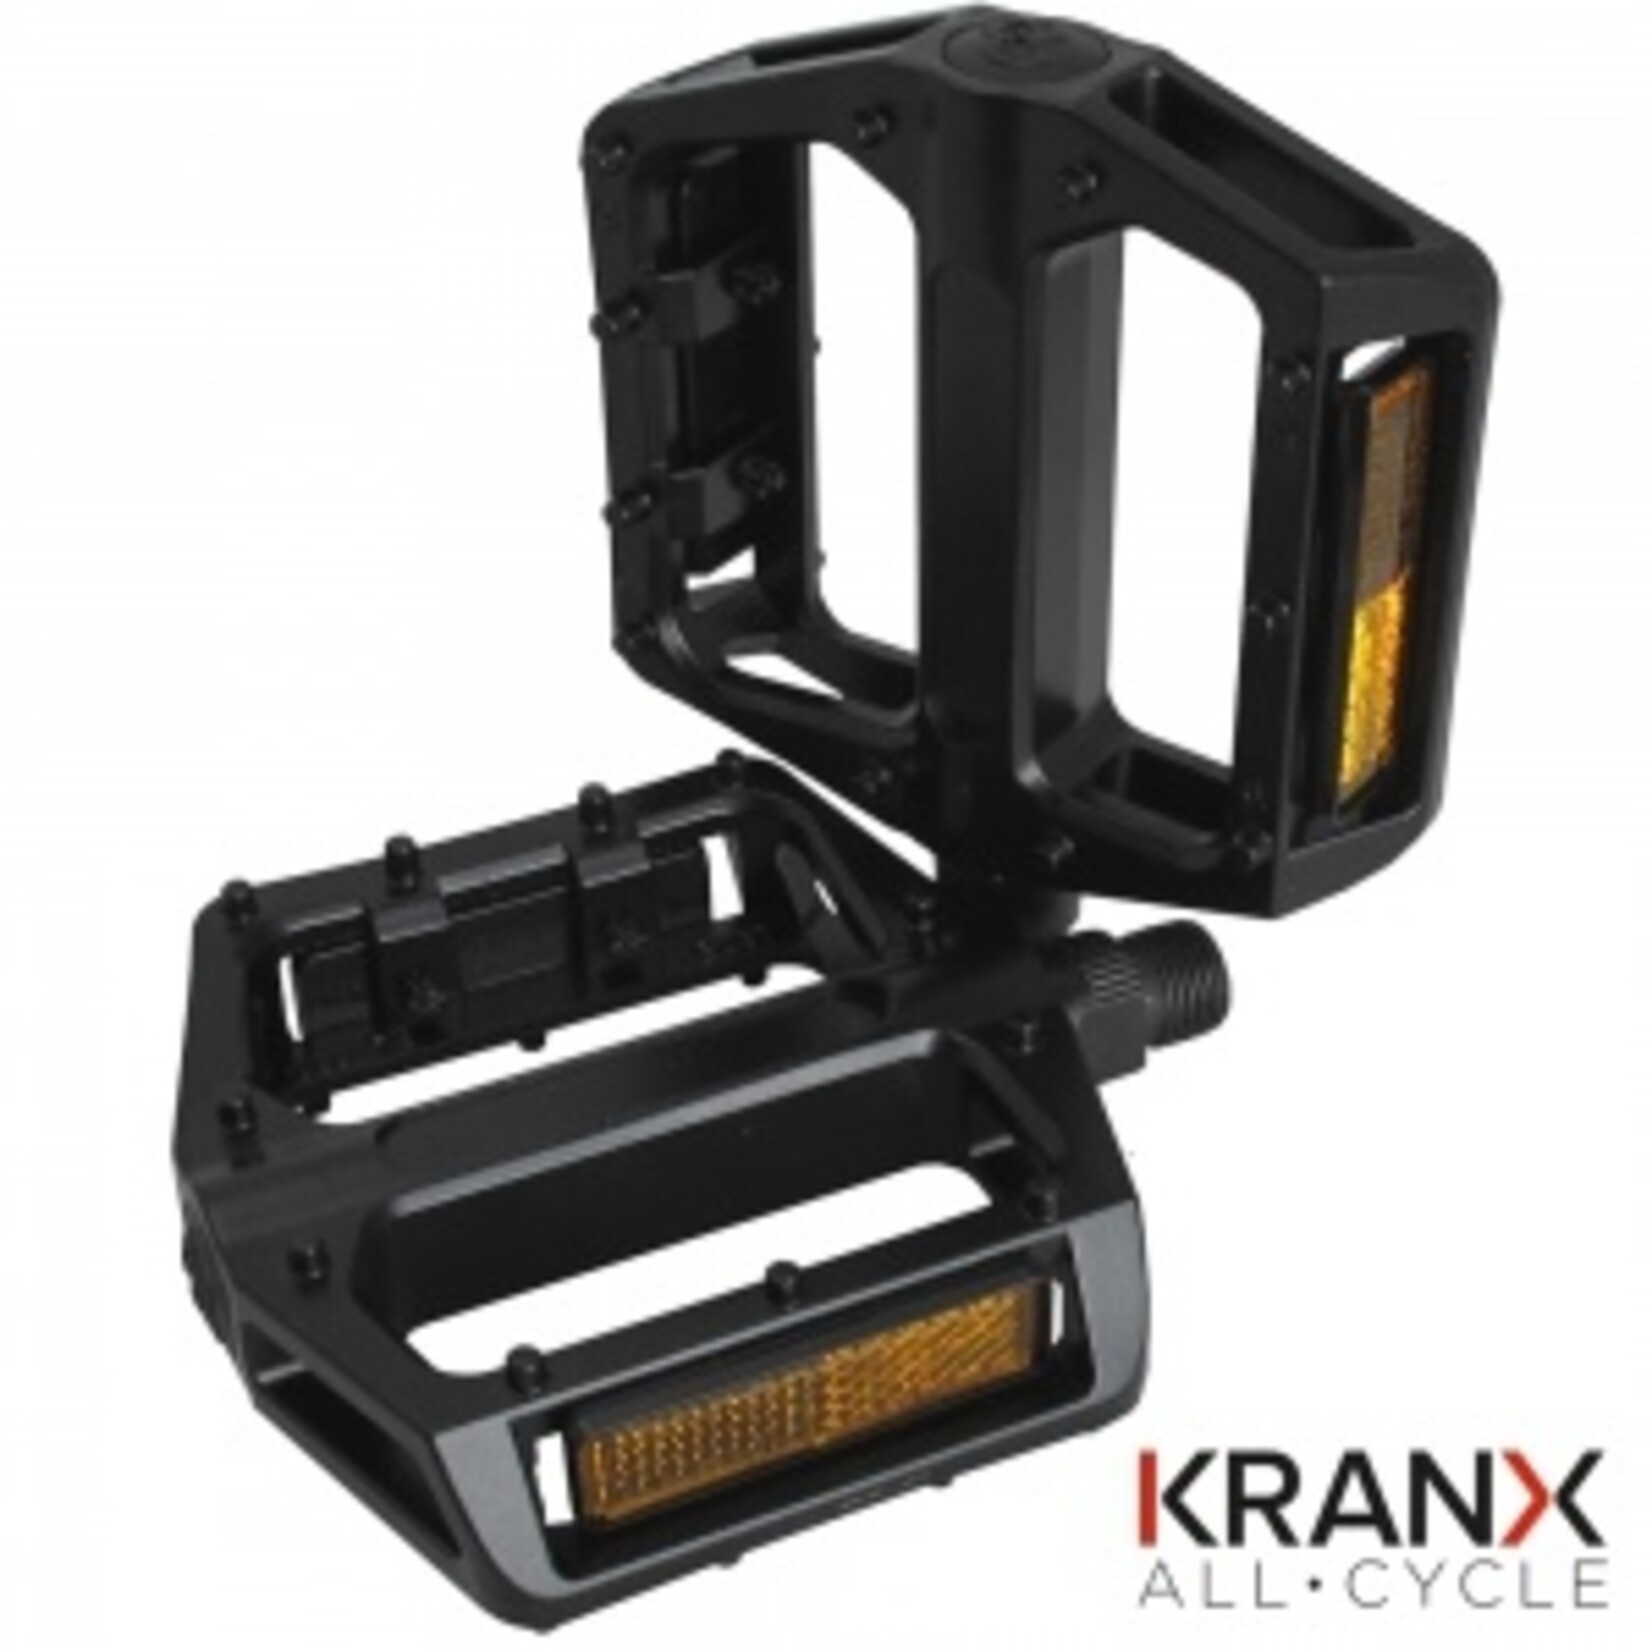 KRANX KranX AllTrail Polymer Bearing Alloy Platform Pedals